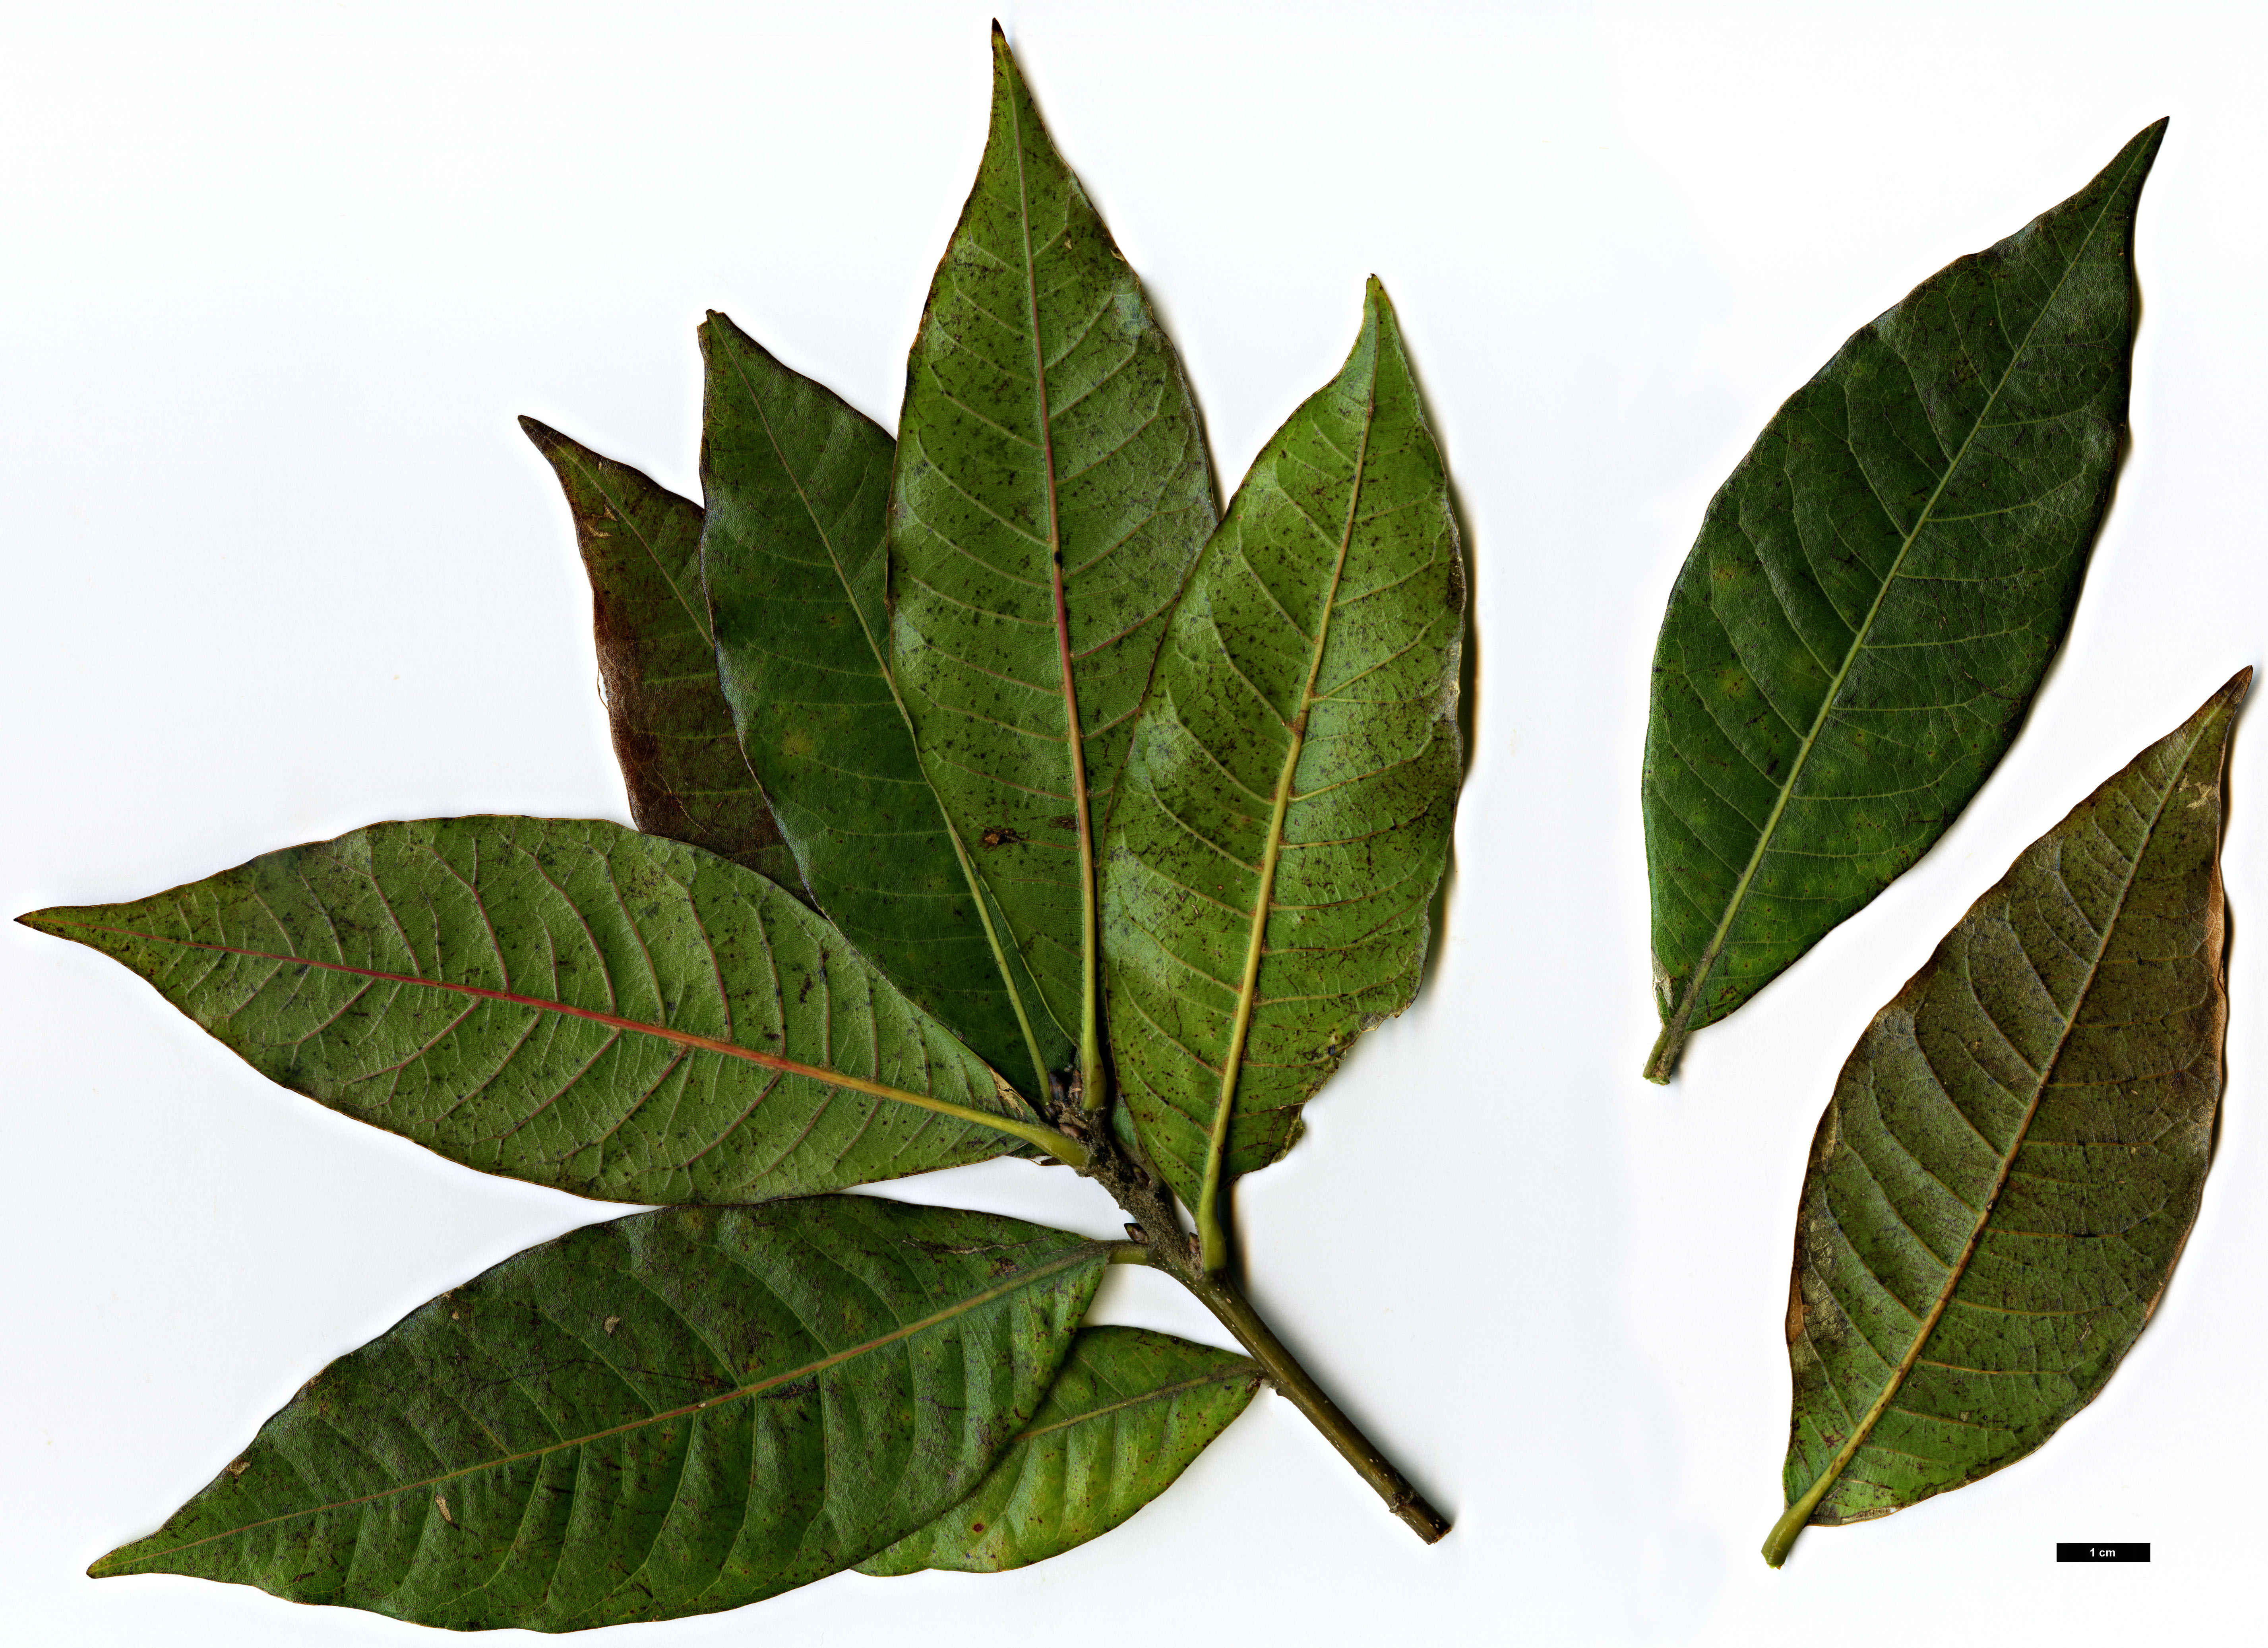 High resolution image: Family: Fagaceae - Genus: Quercus - Taxon: rapurahuensis